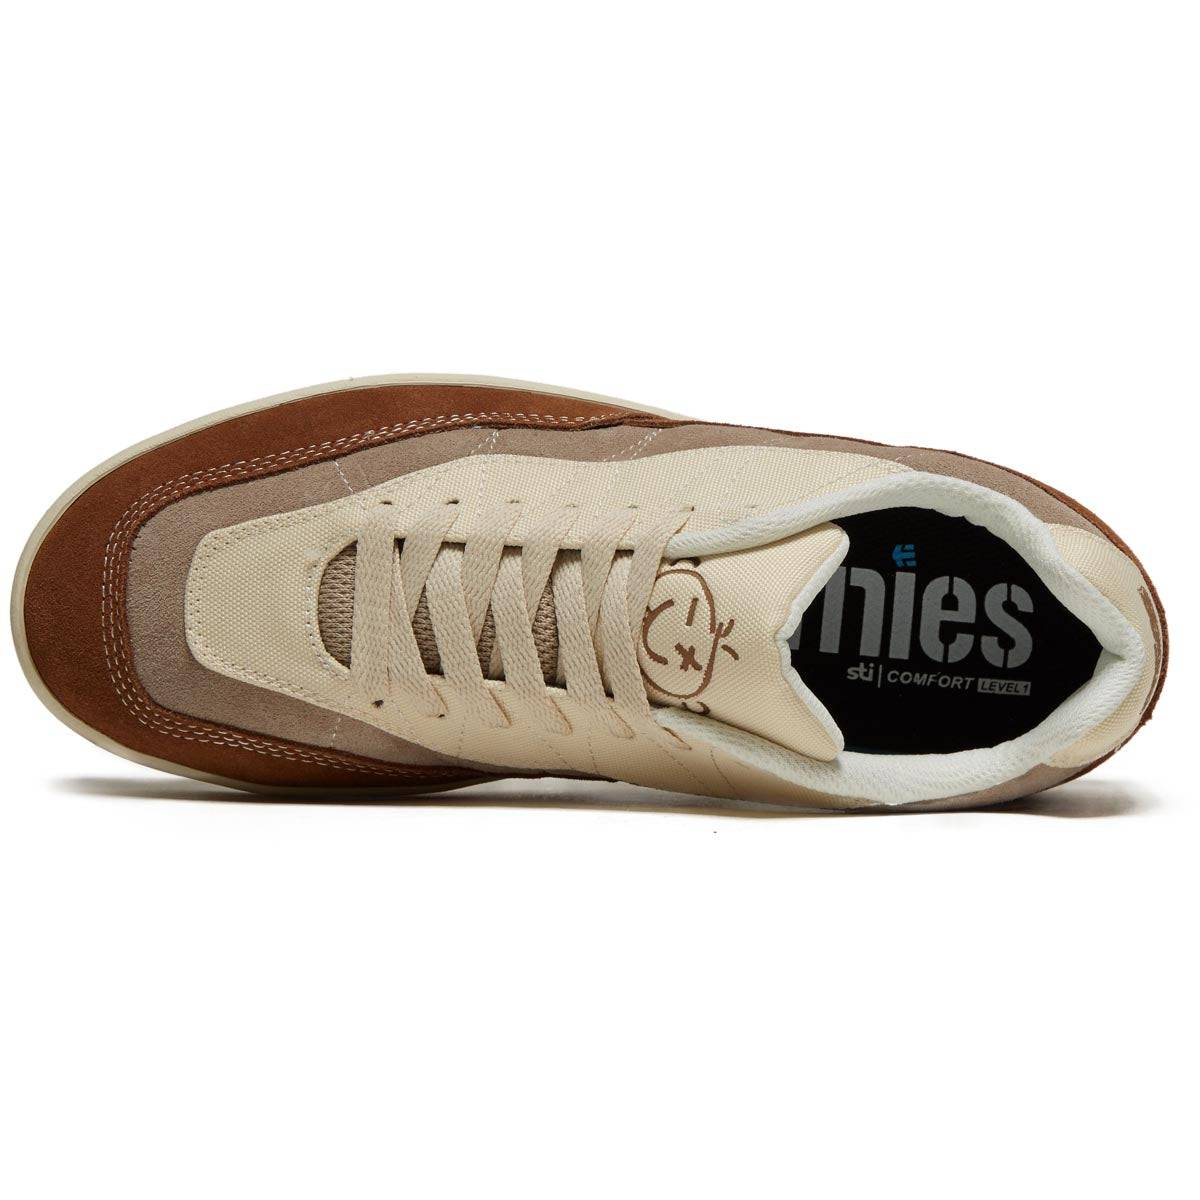 Etnies Snake Shoes - Tan/Brown/Grey image 3